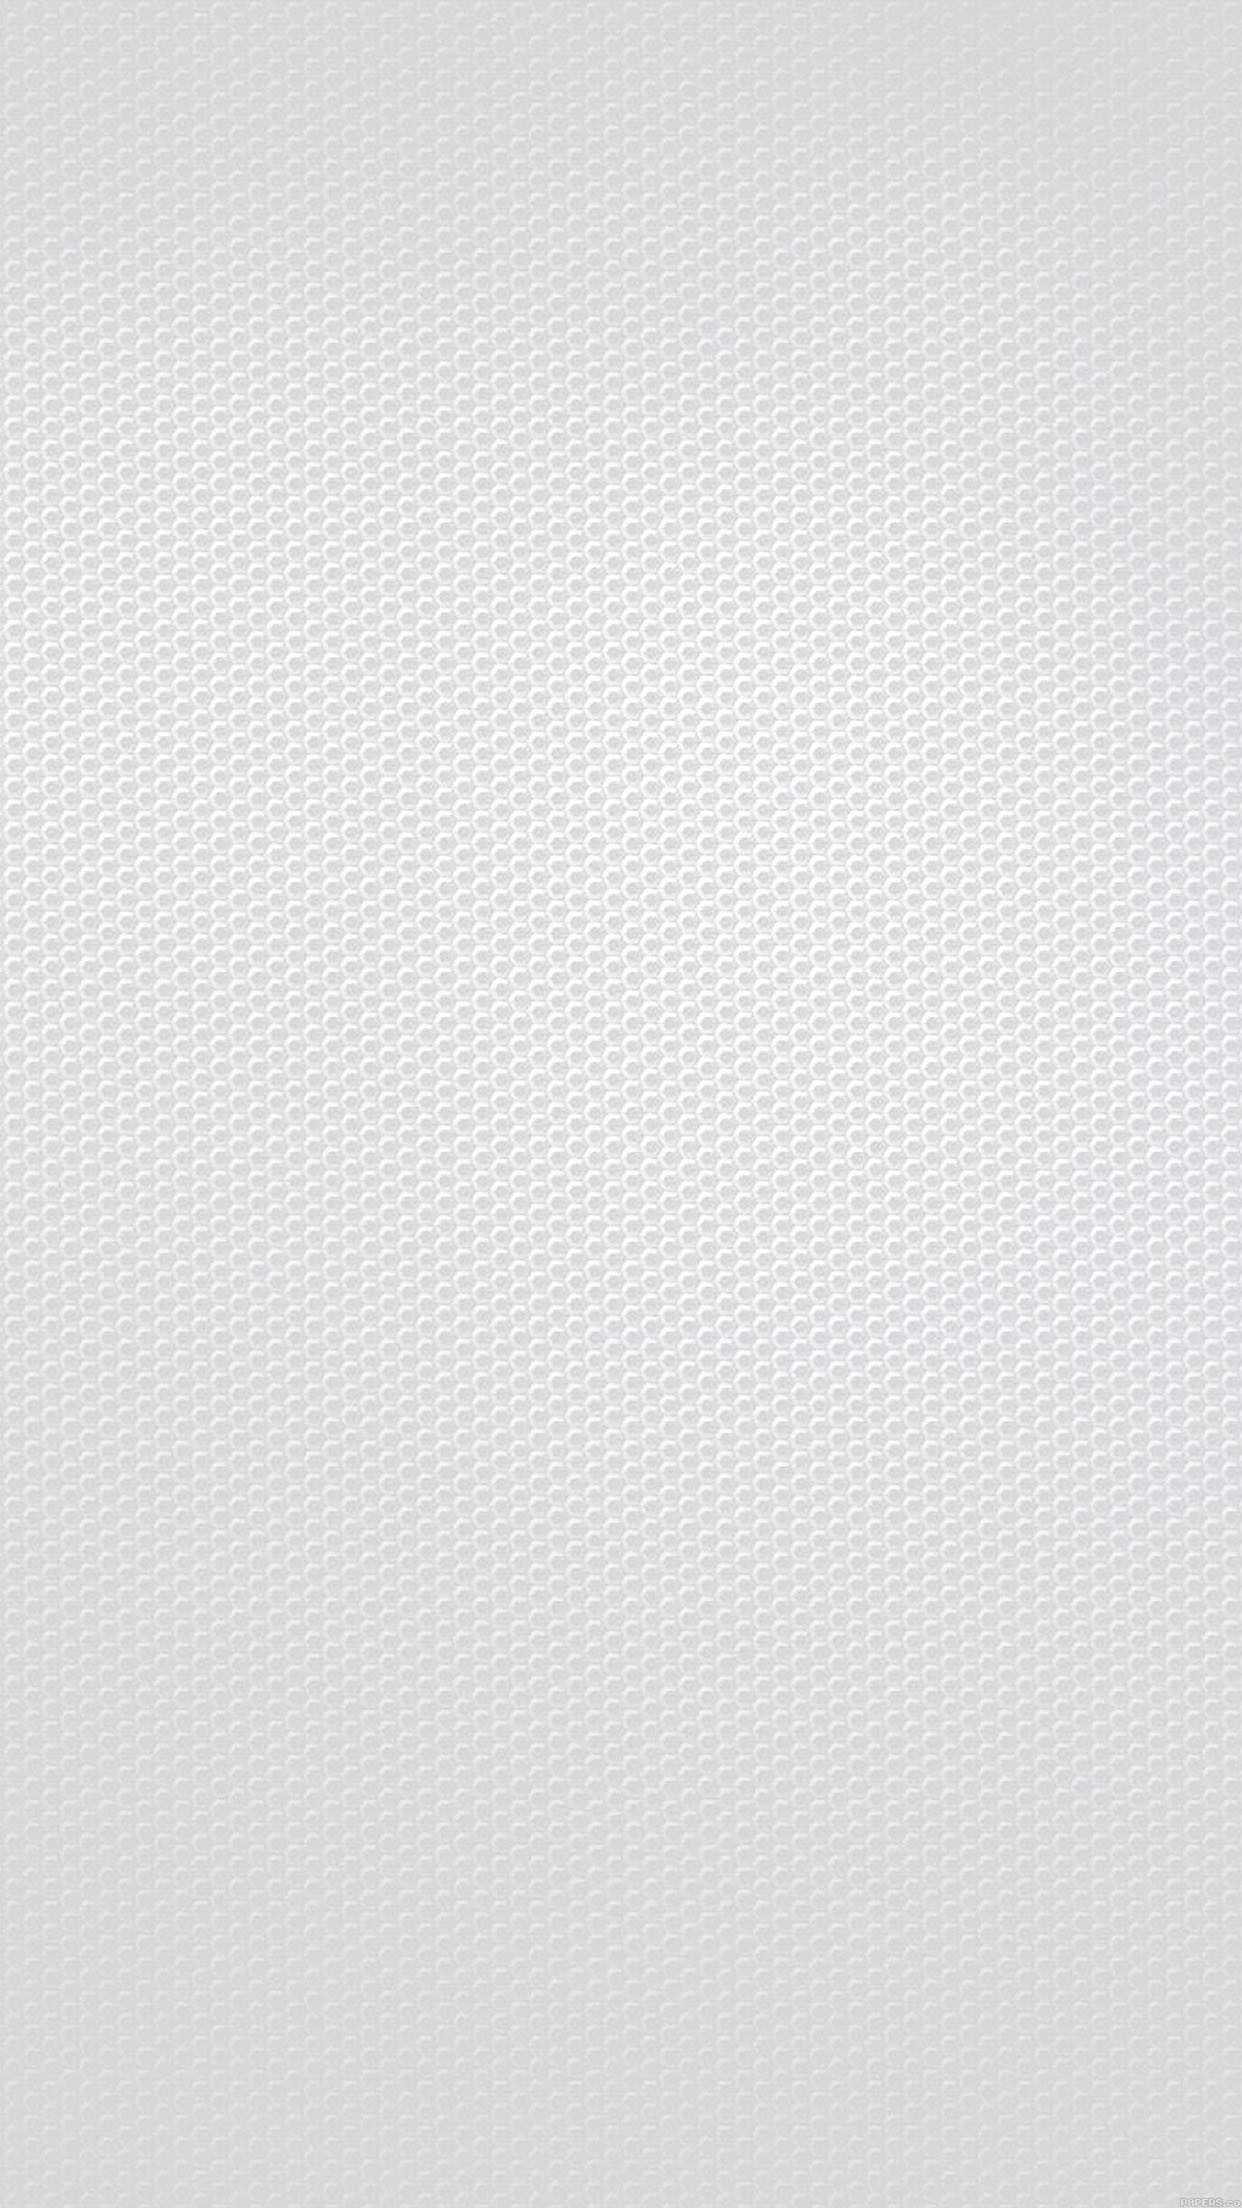 White Carbon Fiber Wallpaper Free HD Wallpaper